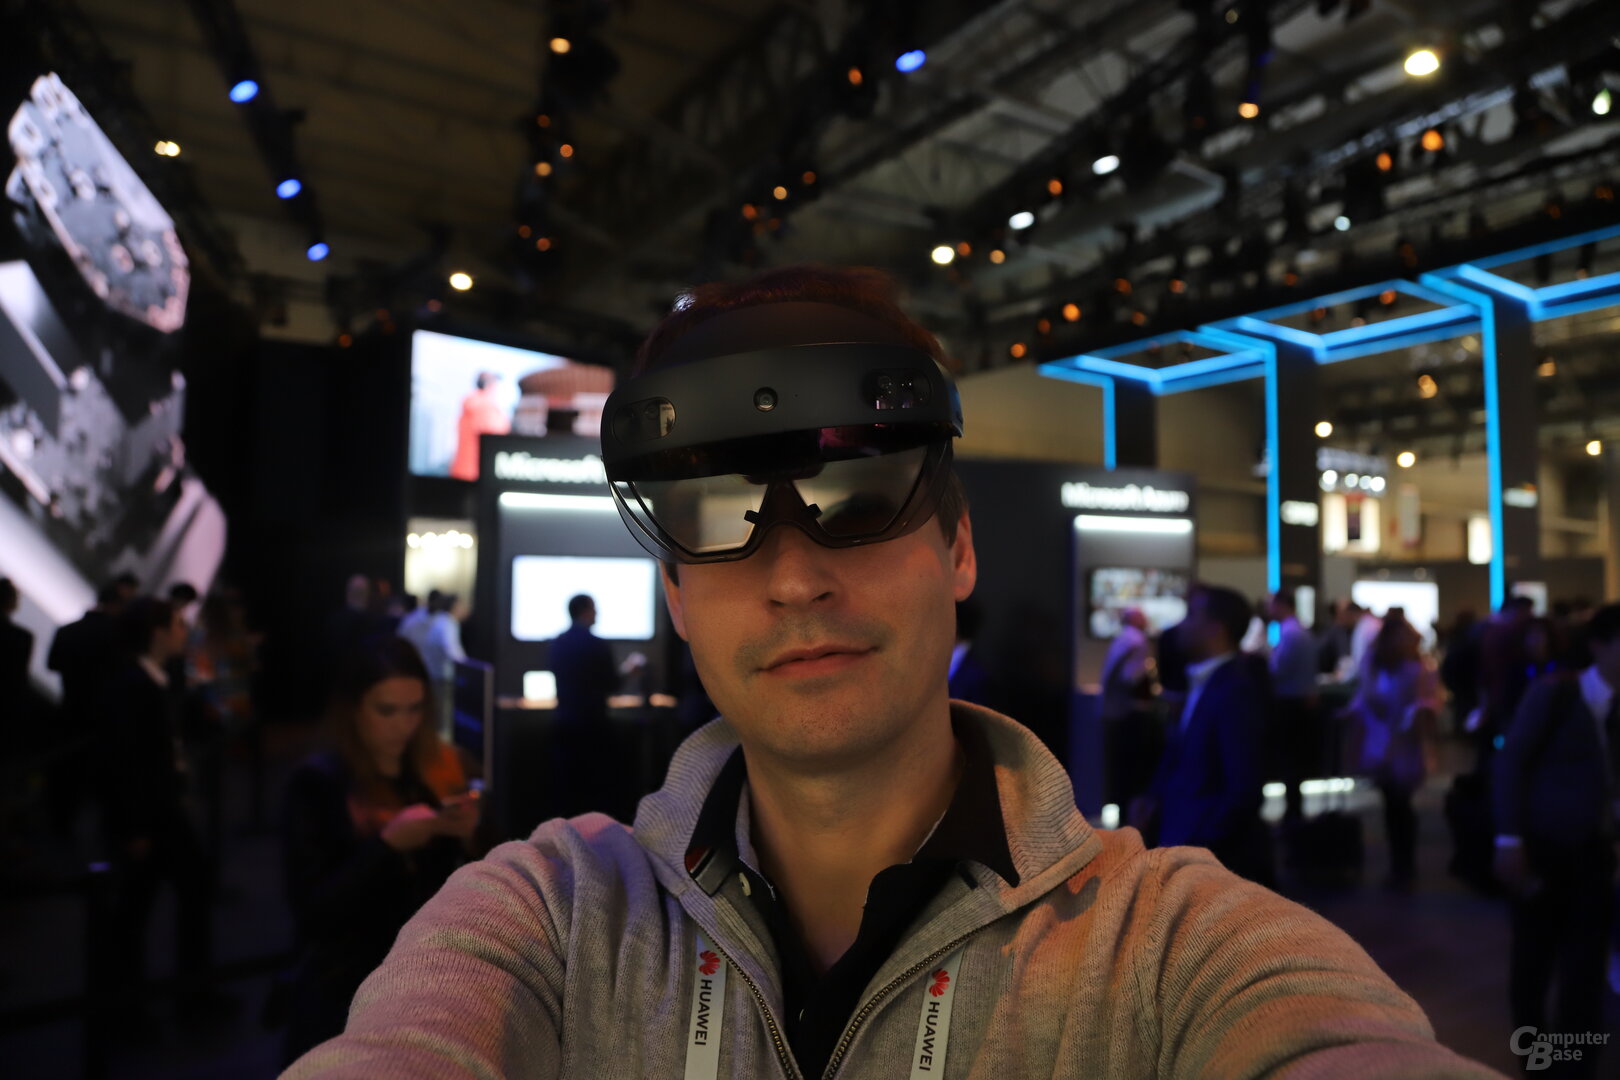 Die neue HoloLens 2 ist ein großer Schritt in die Zukunft